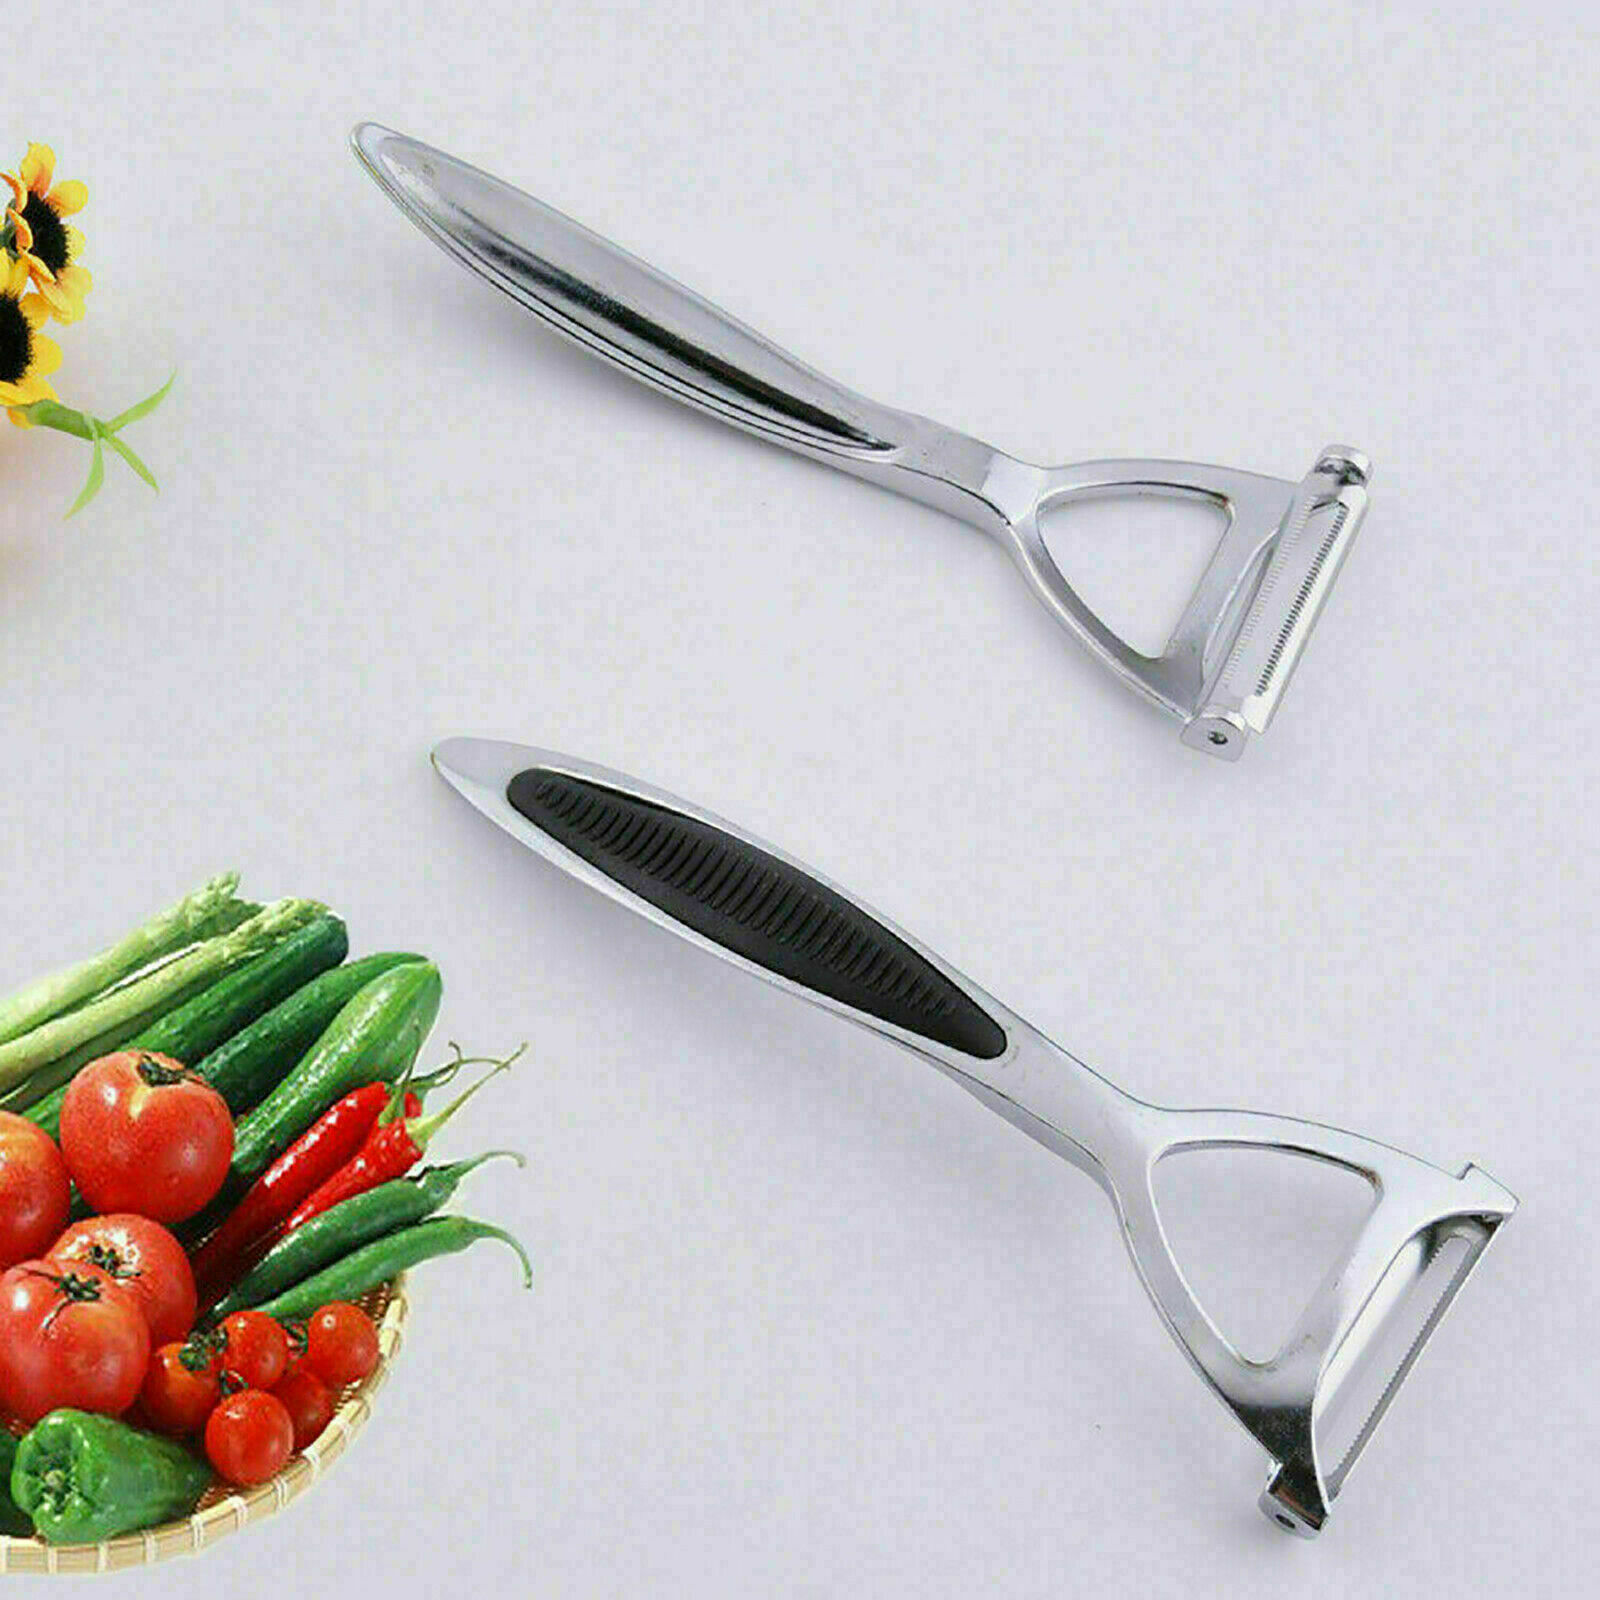 2 in 1 Kitchen Potato Peeler Slicer For Vegetables Fruits Rapid Cutter Peeler Chrome Alloy